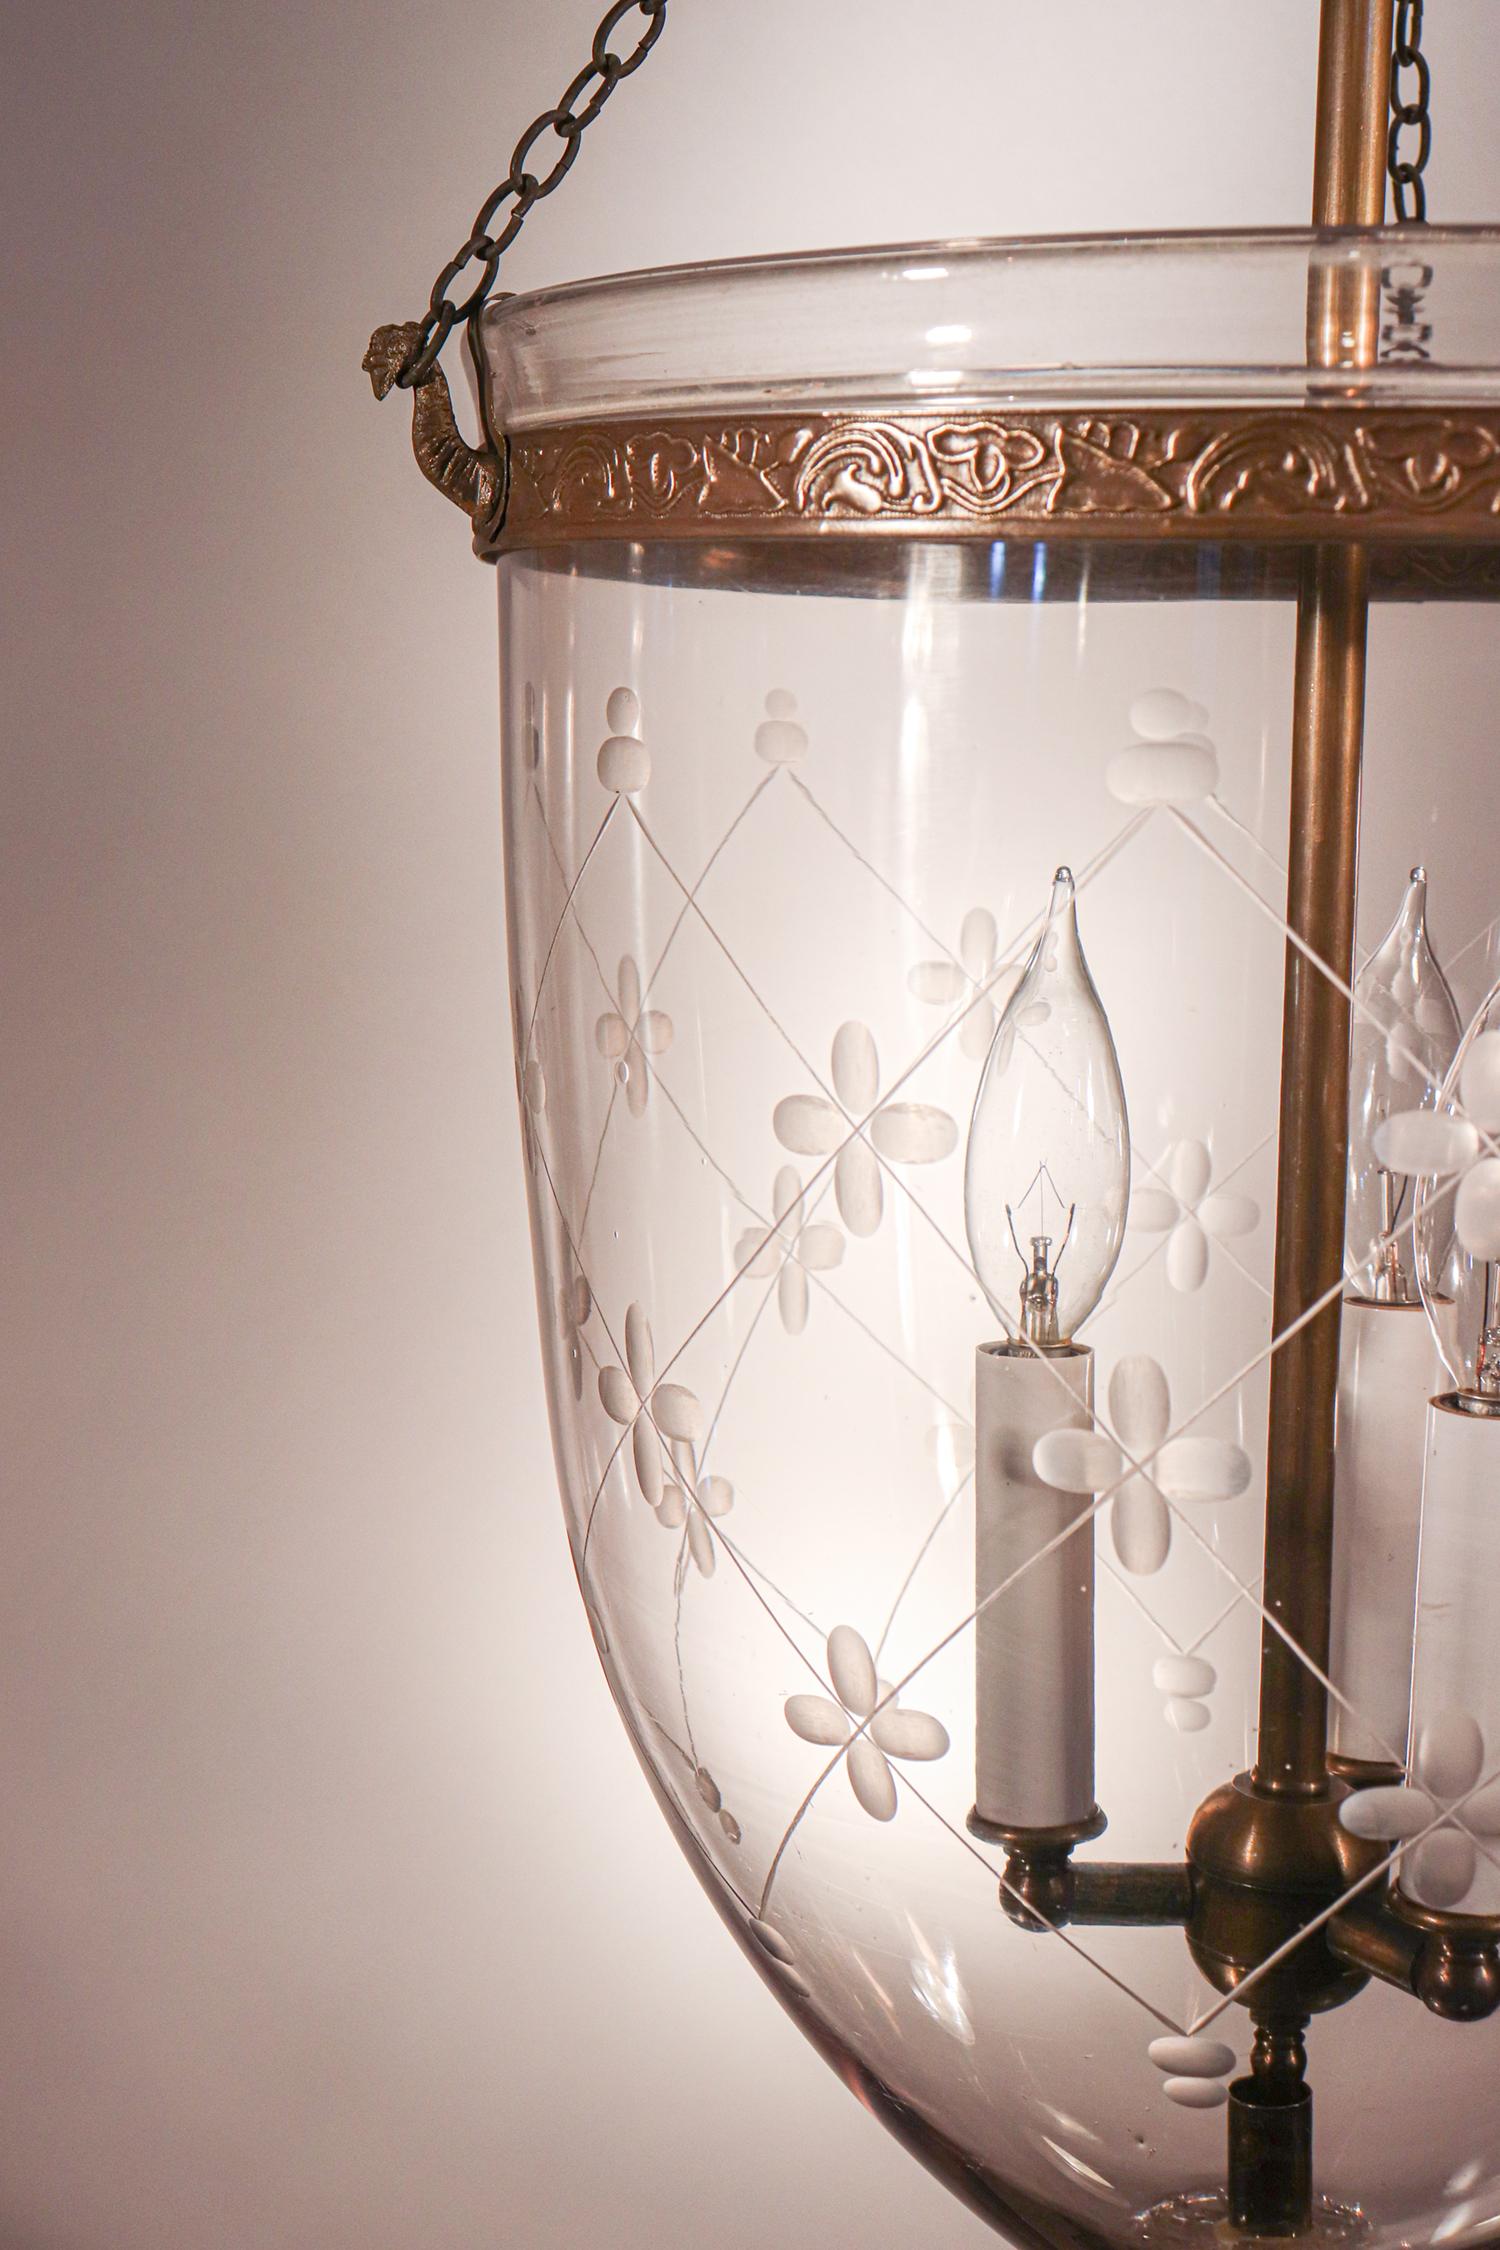 English Antique Bell Jar Lantern with Trellis Etching